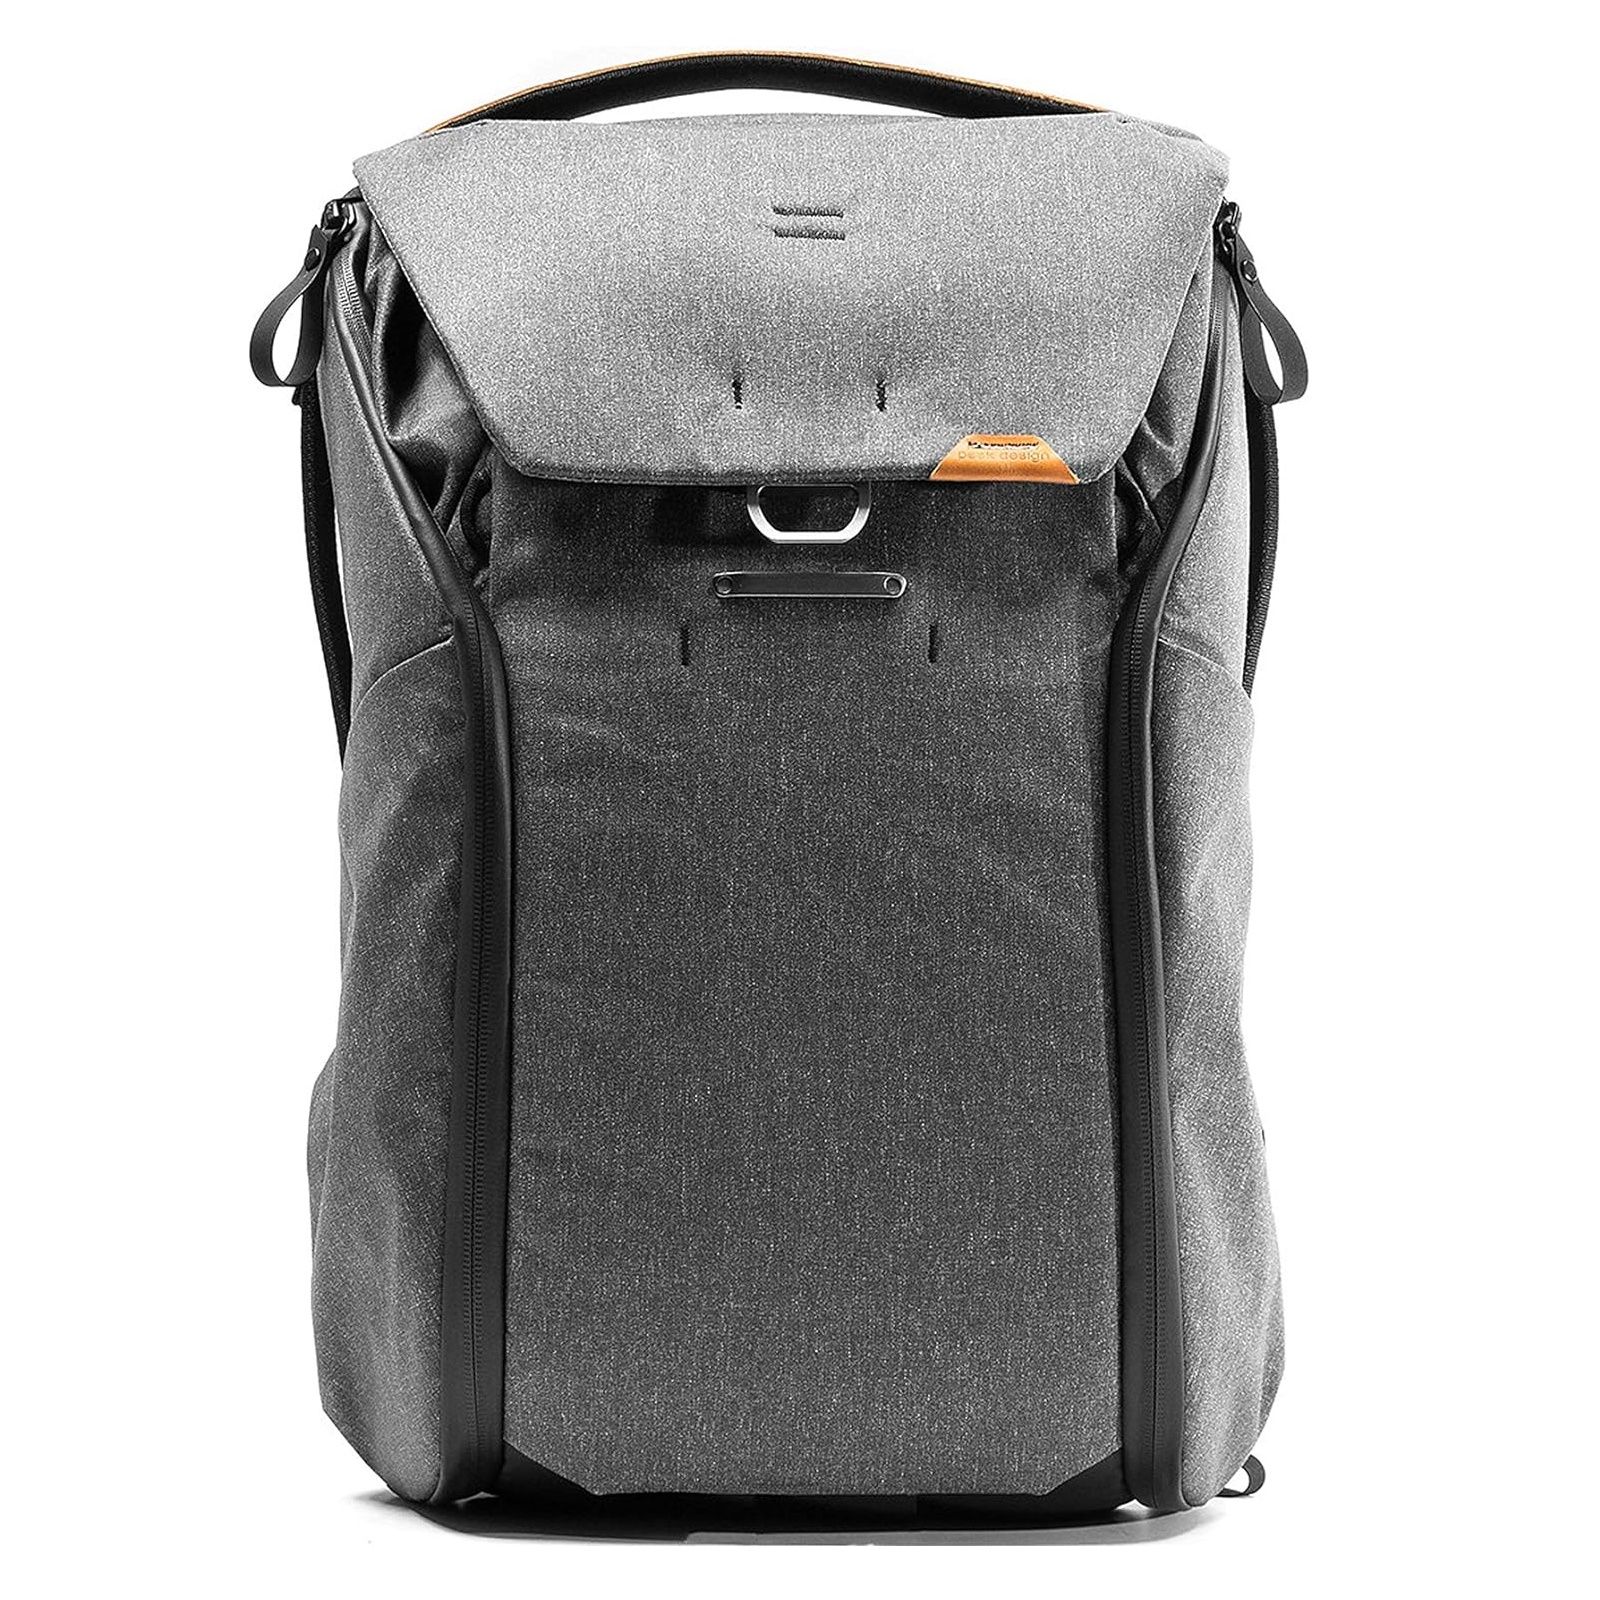 Peak Design Everyday Backpack V2 mostrada de frente contra um fundo branco